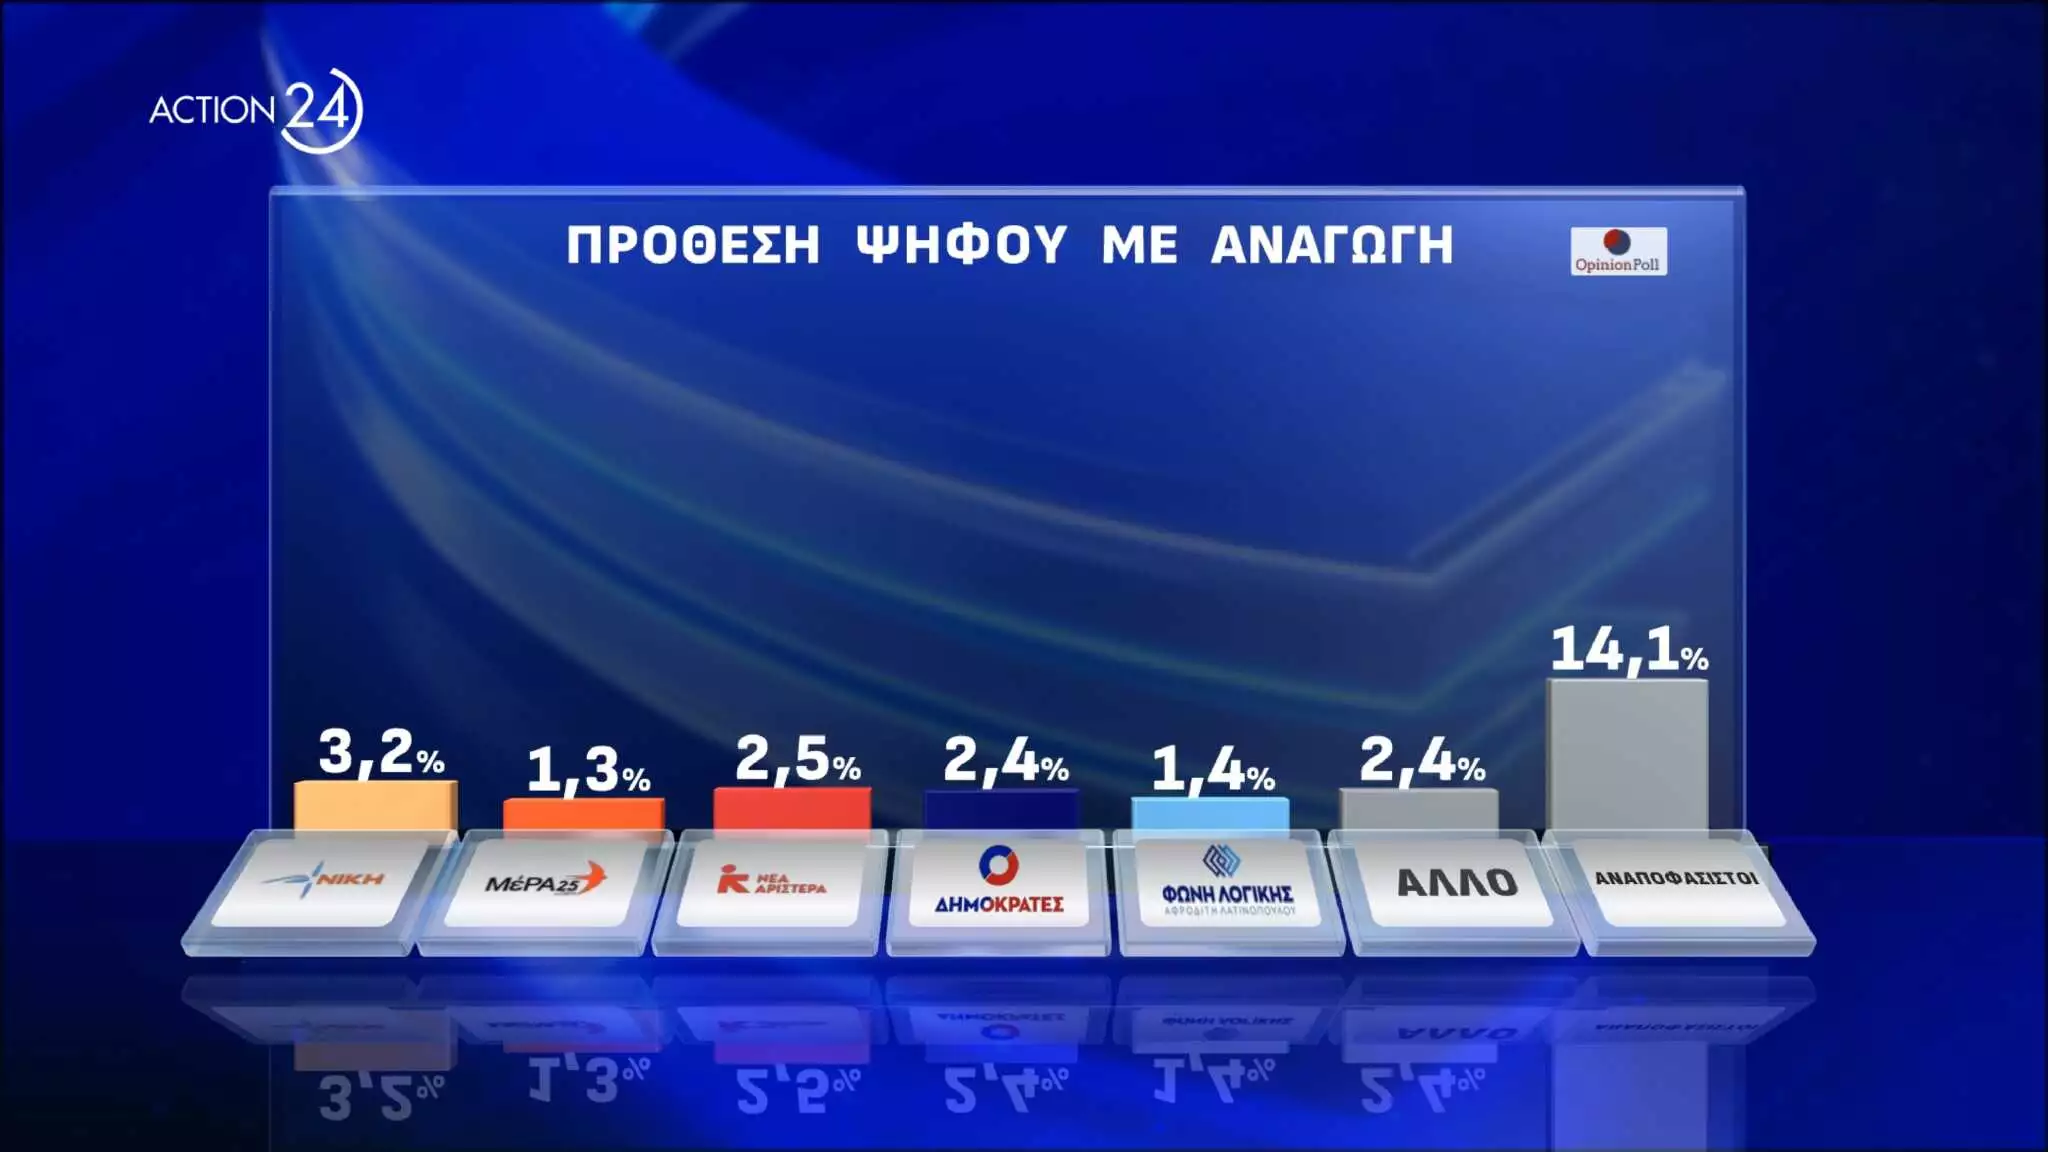 Δημοσκόπηση Opinion Poll για Ευρωεκλογές: Σαρώνουν Αυτιάς και Δήμας από ΝΔ, Μπεκατώρου και Παππάς από ΣΥΡΙΖΑ